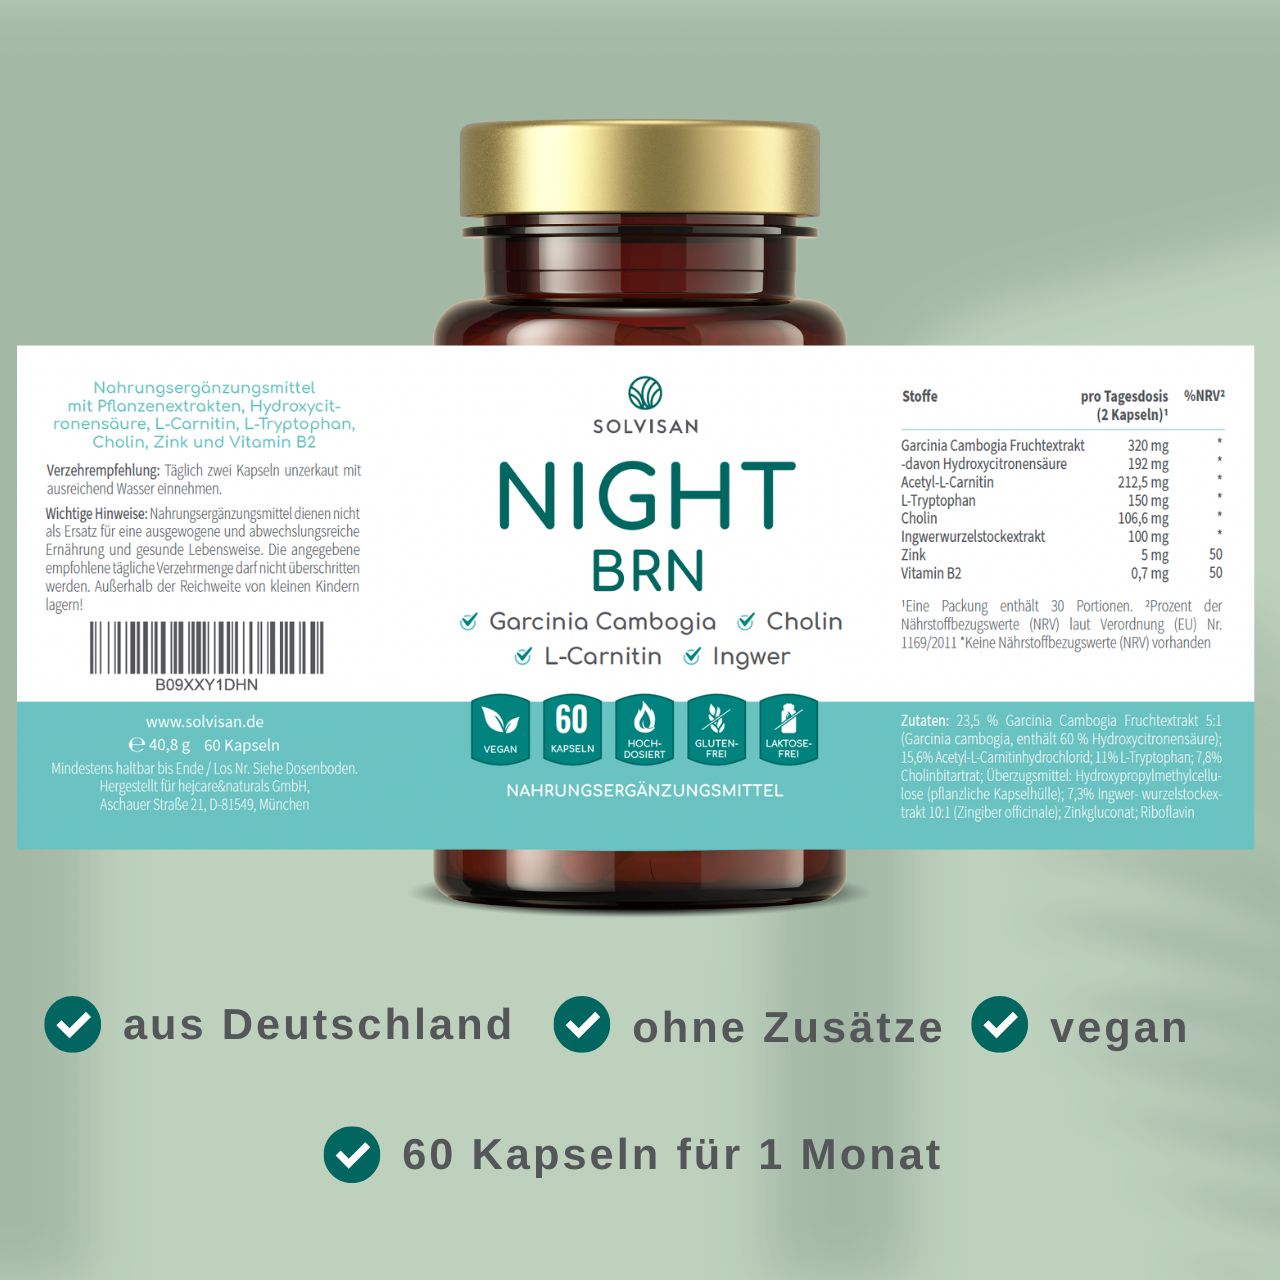 SOLVISAN® NIGHT BRN - Stoffwechsel-Formel* - mit  L-Carnitin, Garcinia Cambogia und Ingwer